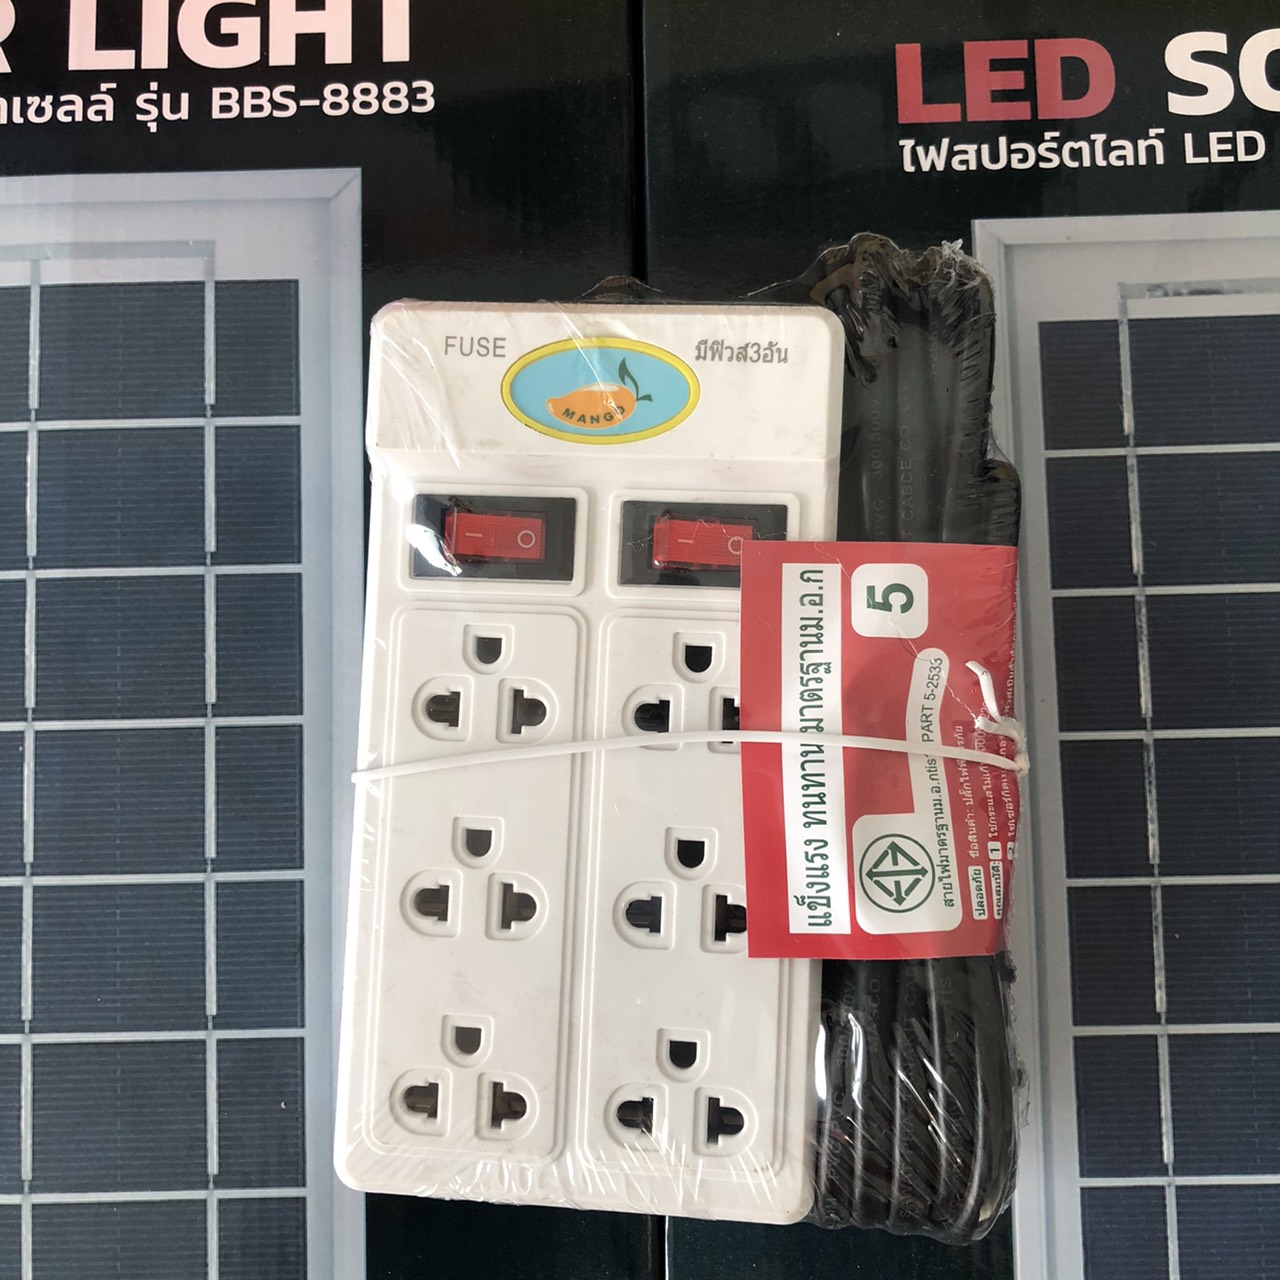 LED ปลั๊กไฟ 6ช่อง 2สวิตซ์ สามารถใช้กับเครื่องใช้ไฟฟ้าทั่วไป  ปลั๊กไฟ 6ช่อง 1สวิตซ์ สามารถใช้กับเครื่องใช้ไฟฟ้าทั่วไป